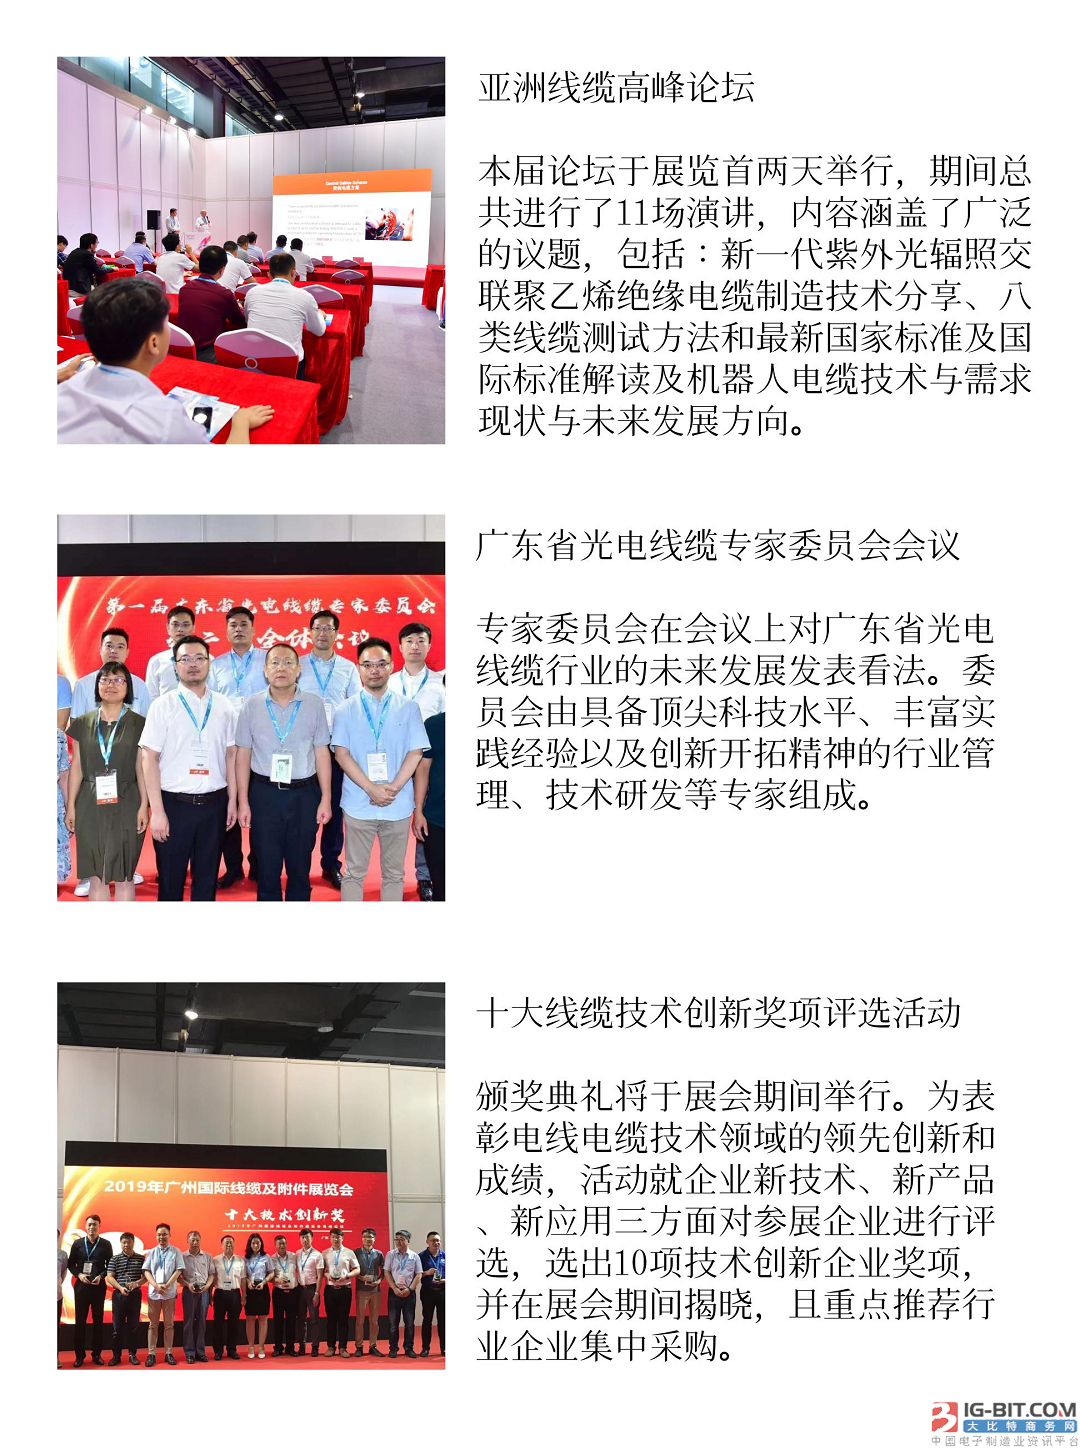 广州国际电线电缆及附件展览会